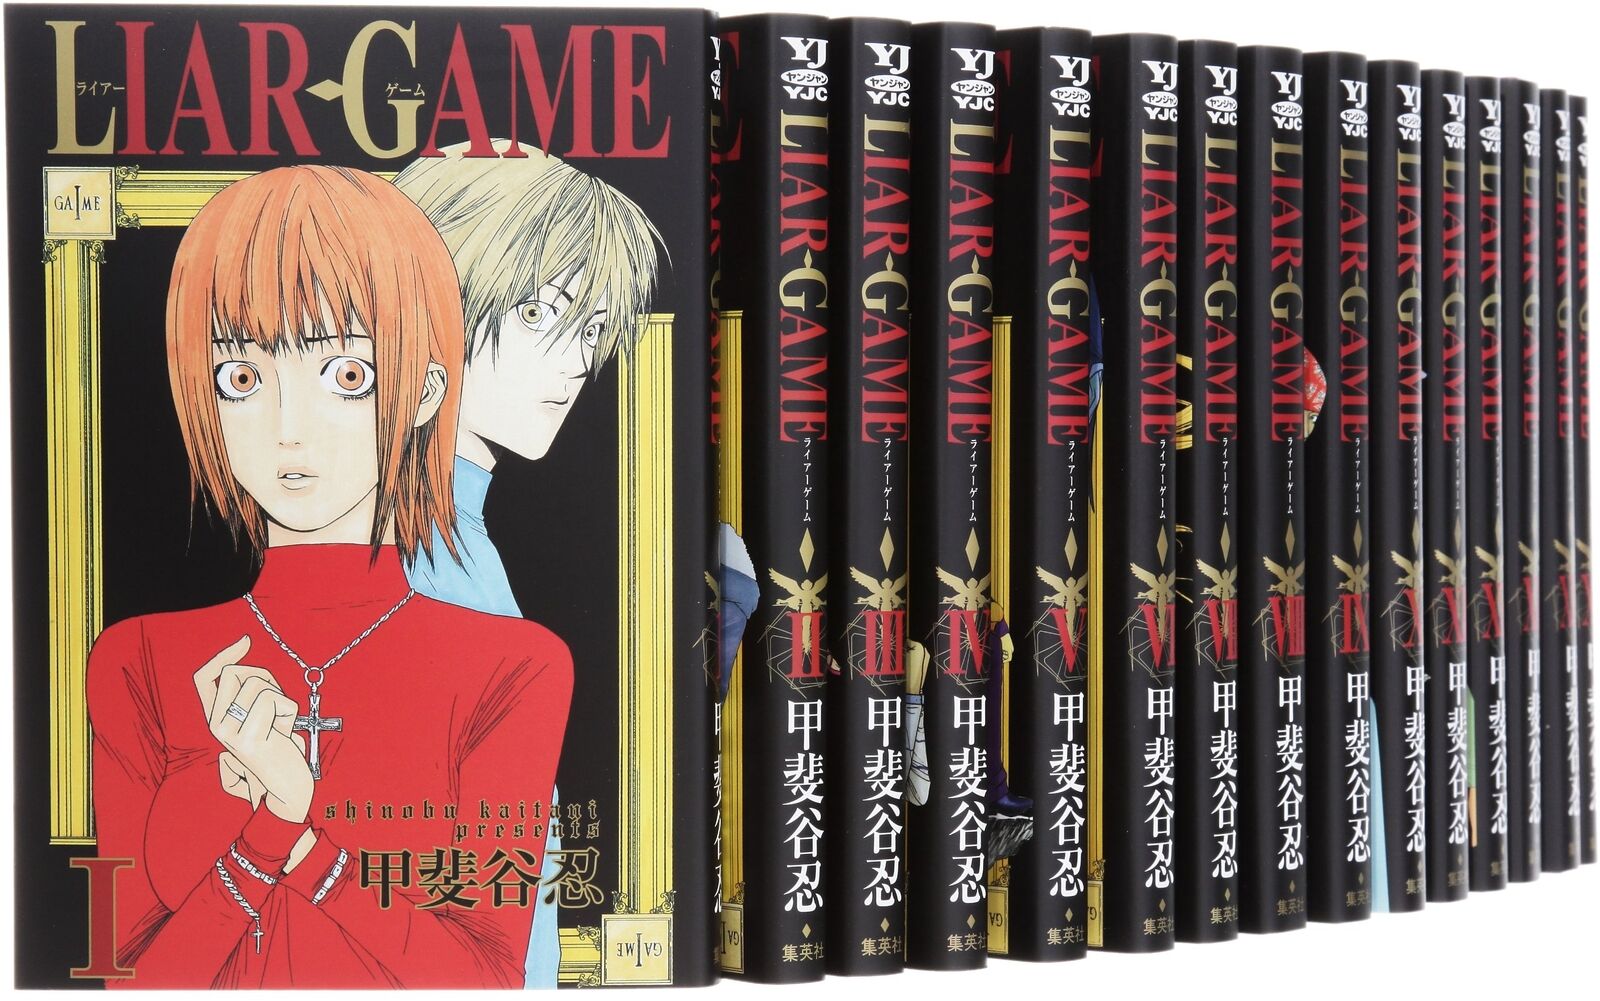 LIAR GAME Vol.1-19 Complete set Comics Manga Shinobu Kaitani Shueisha Japanese